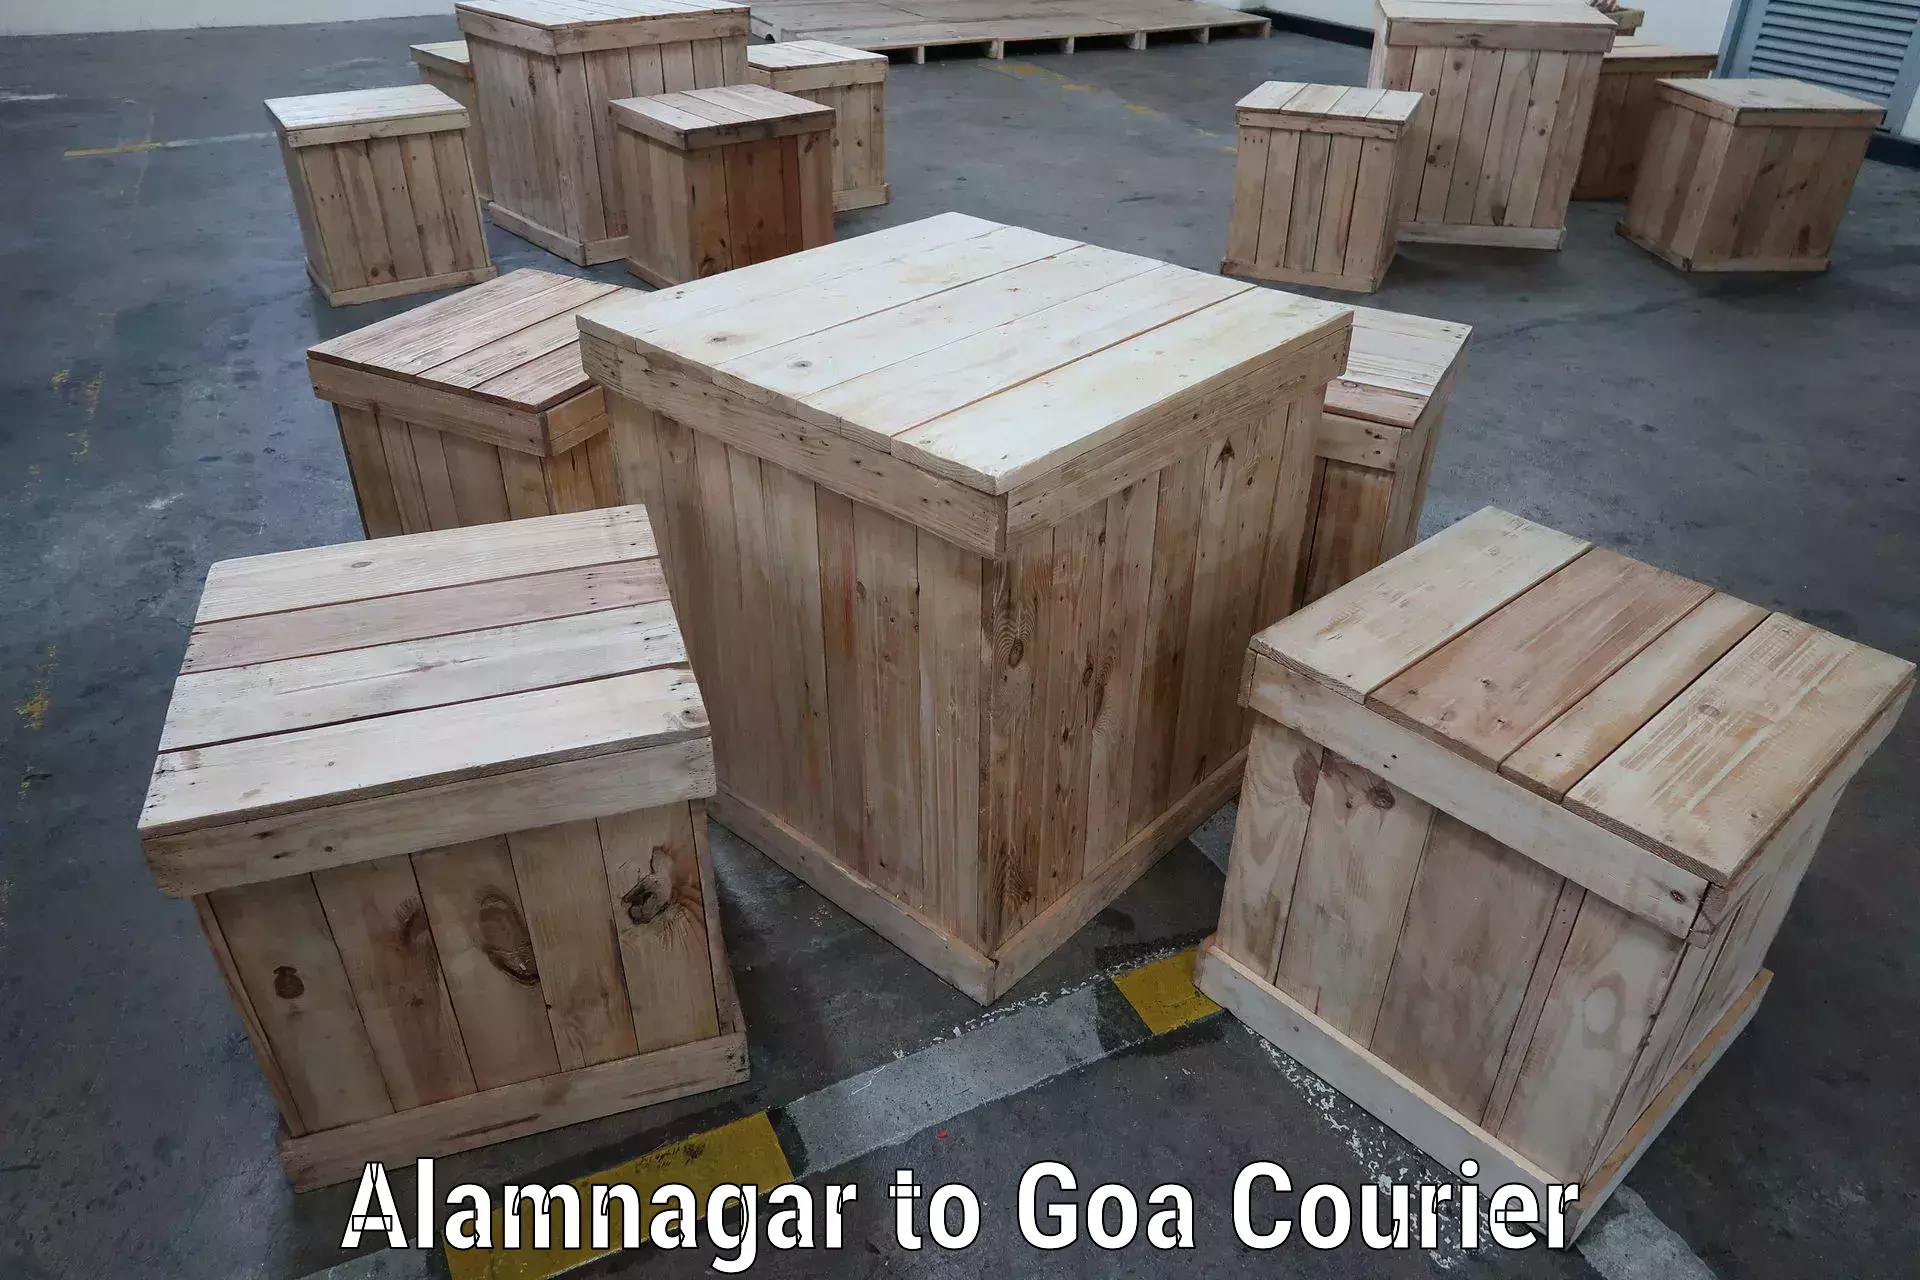 Courier service innovation Alamnagar to Vasco da Gama